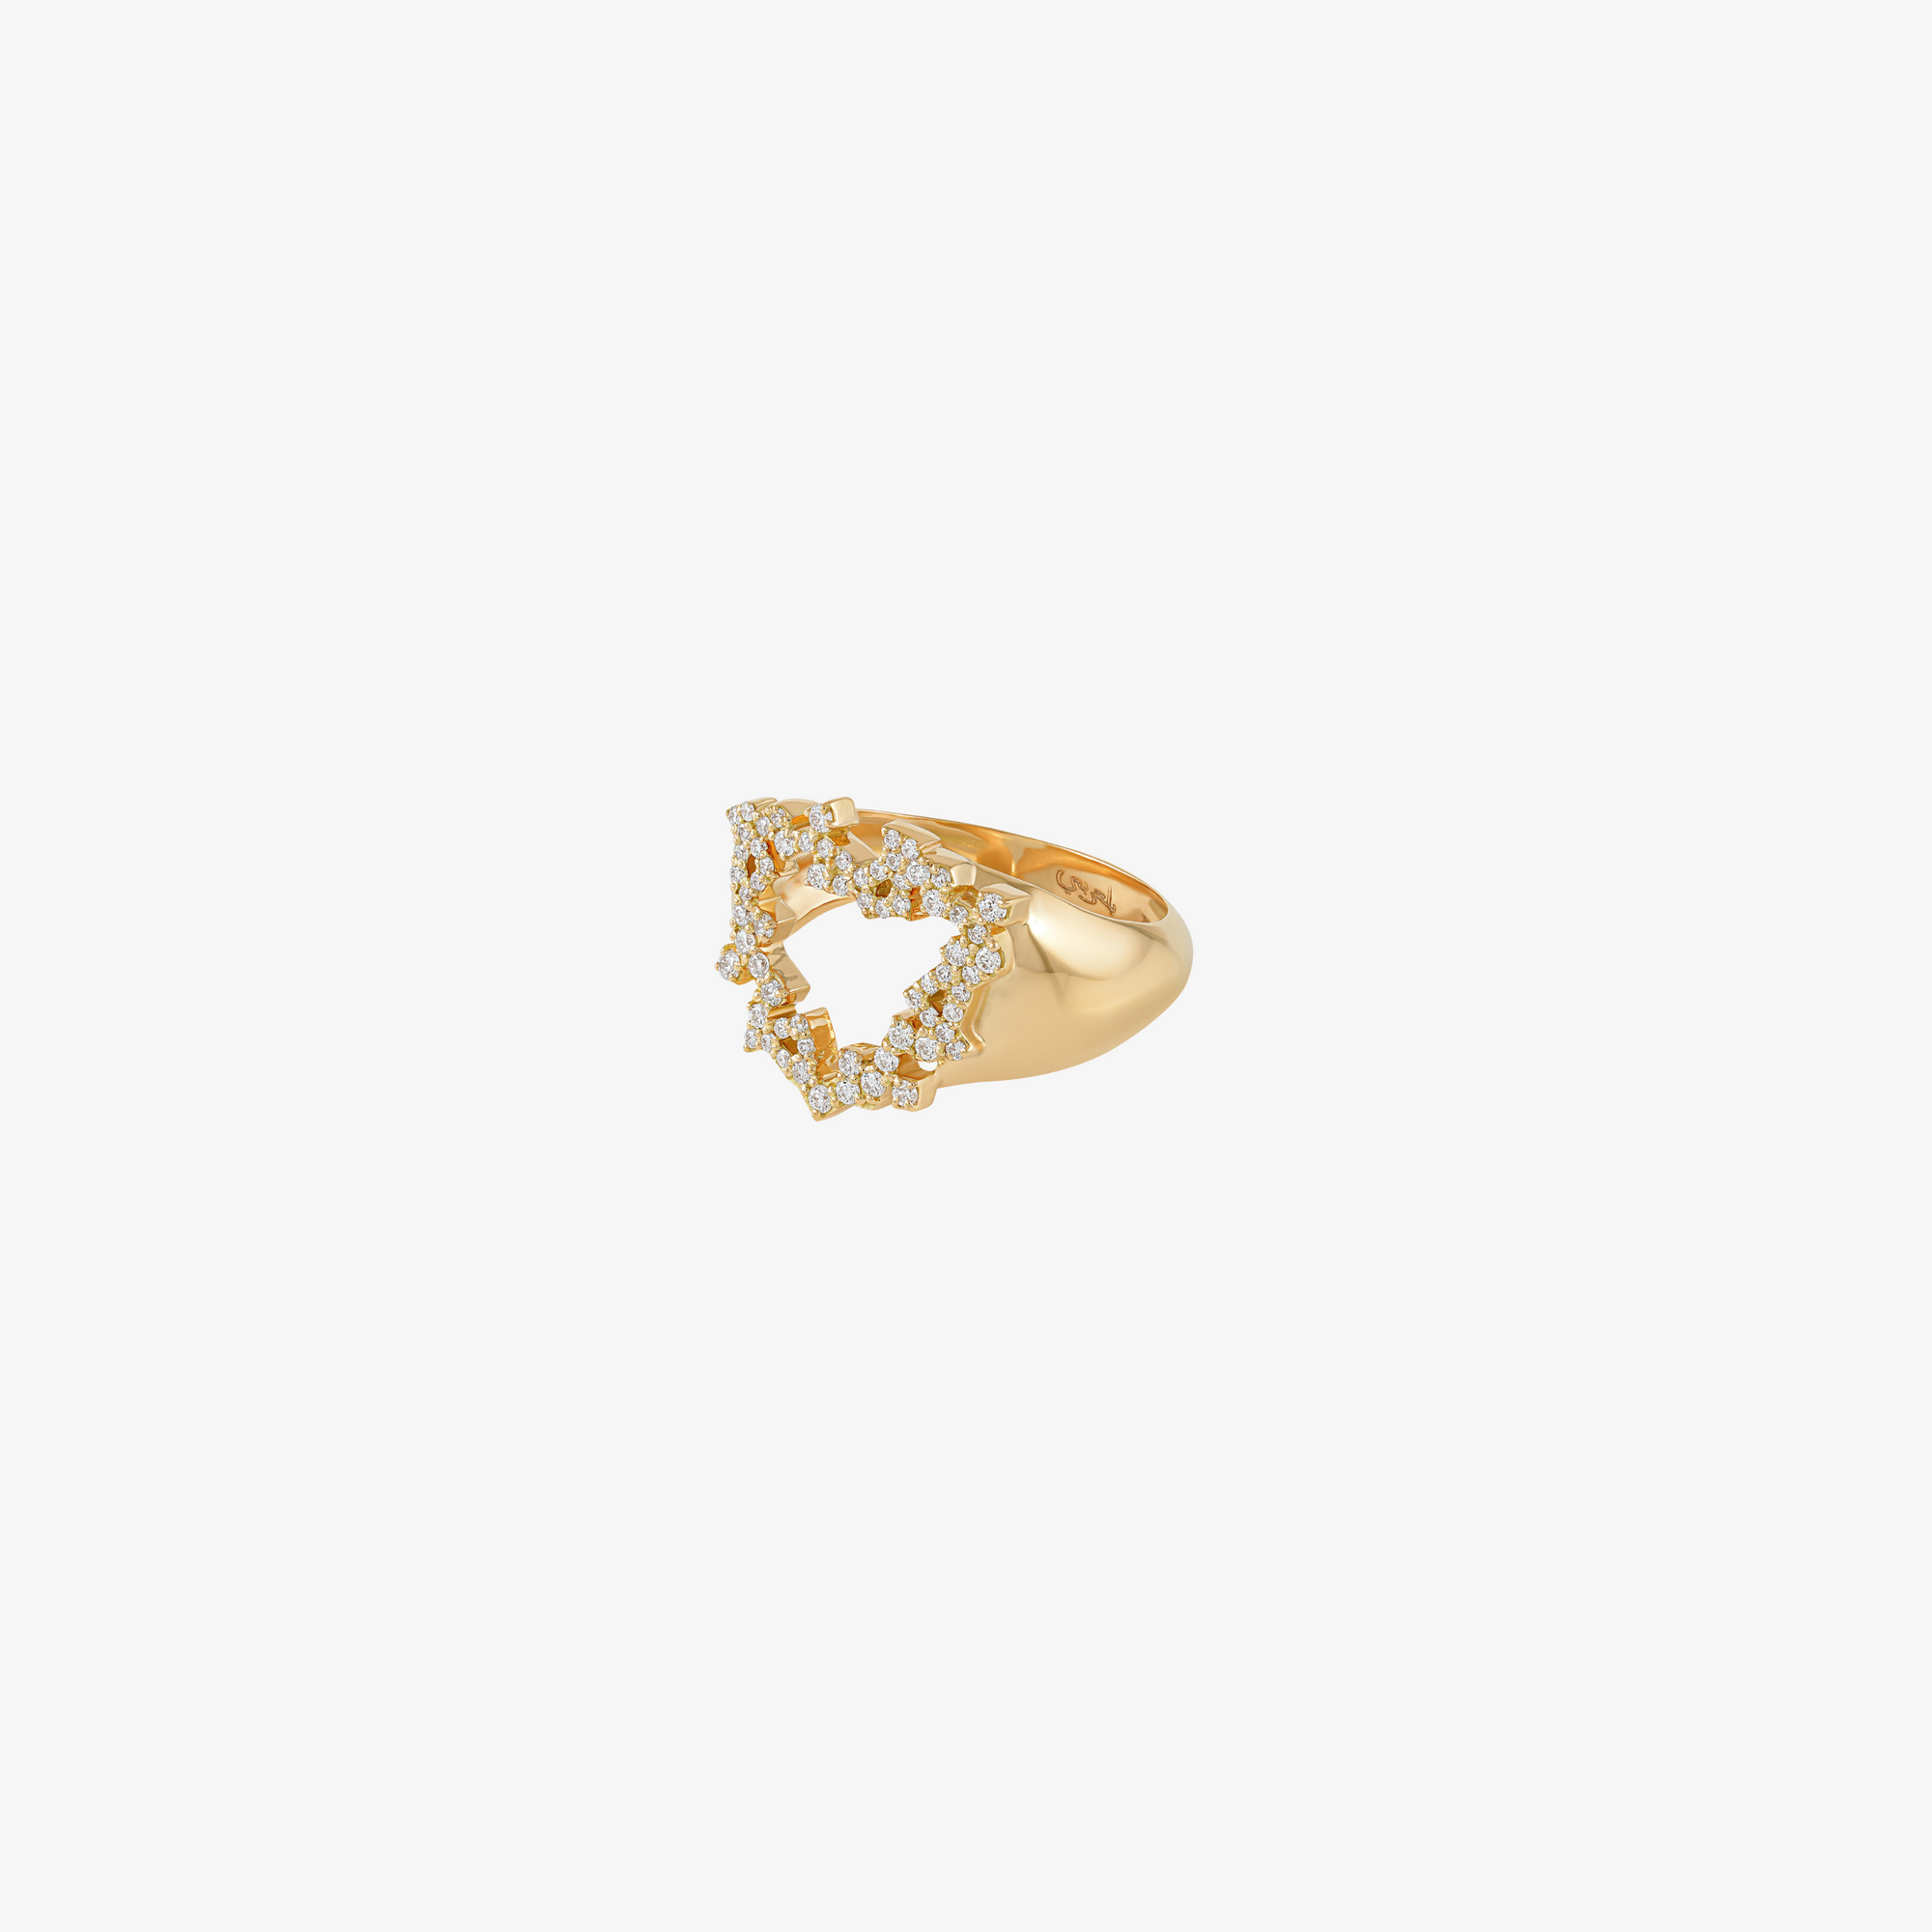 HOBB — 18K Gold & Diamond "Love" Ring